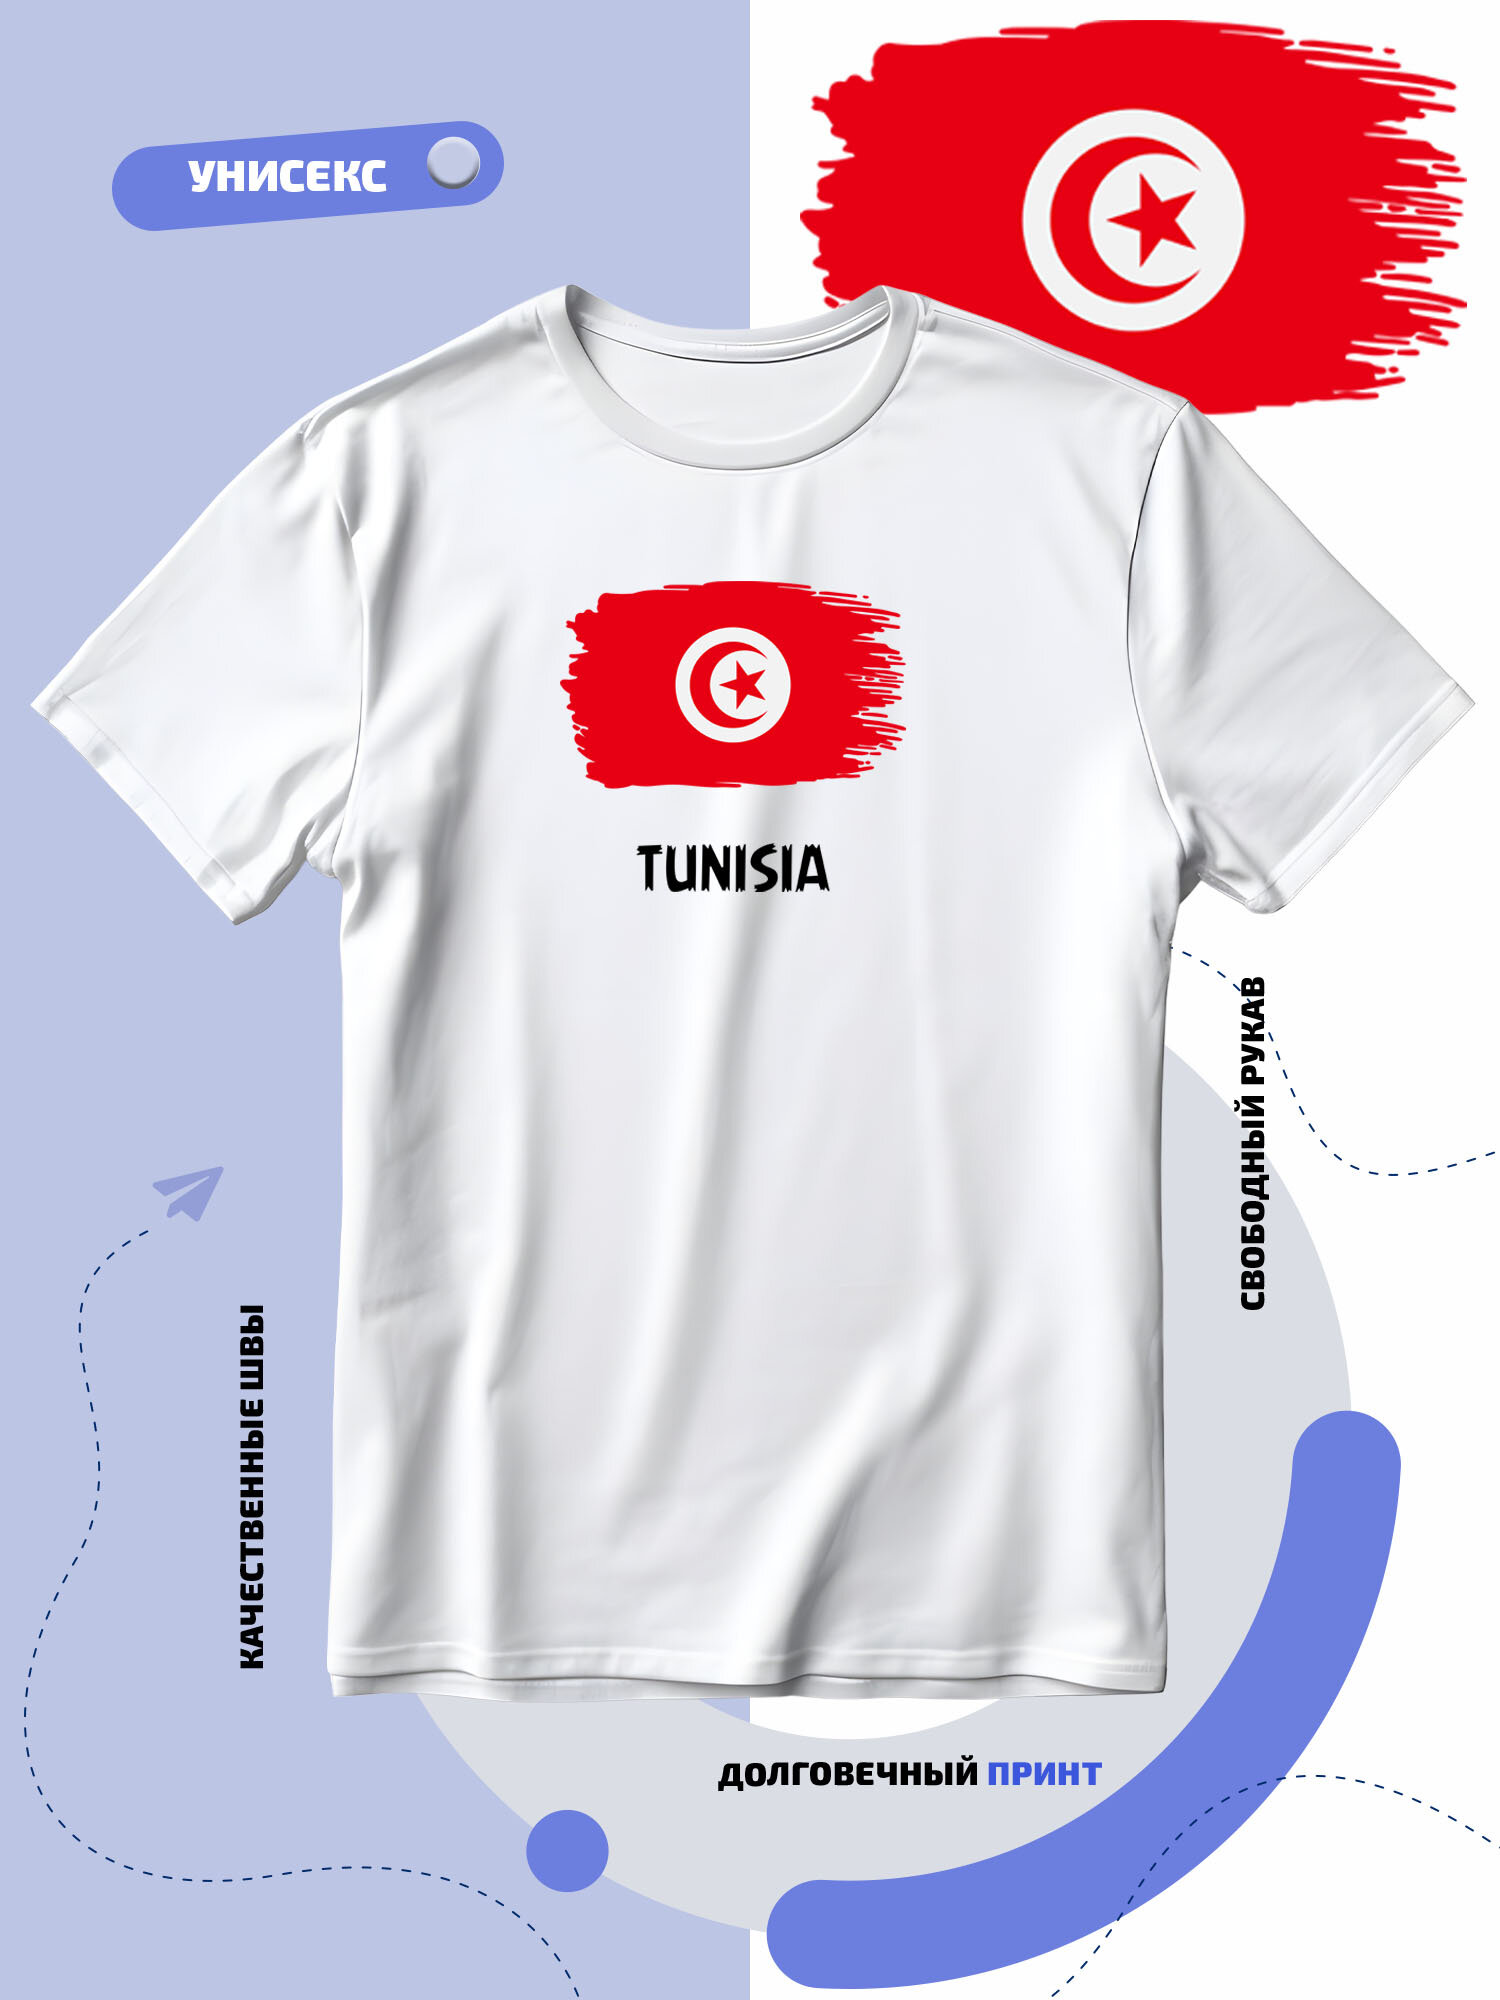 Футболка SMAIL-P с флагом Туниса-Tunisia